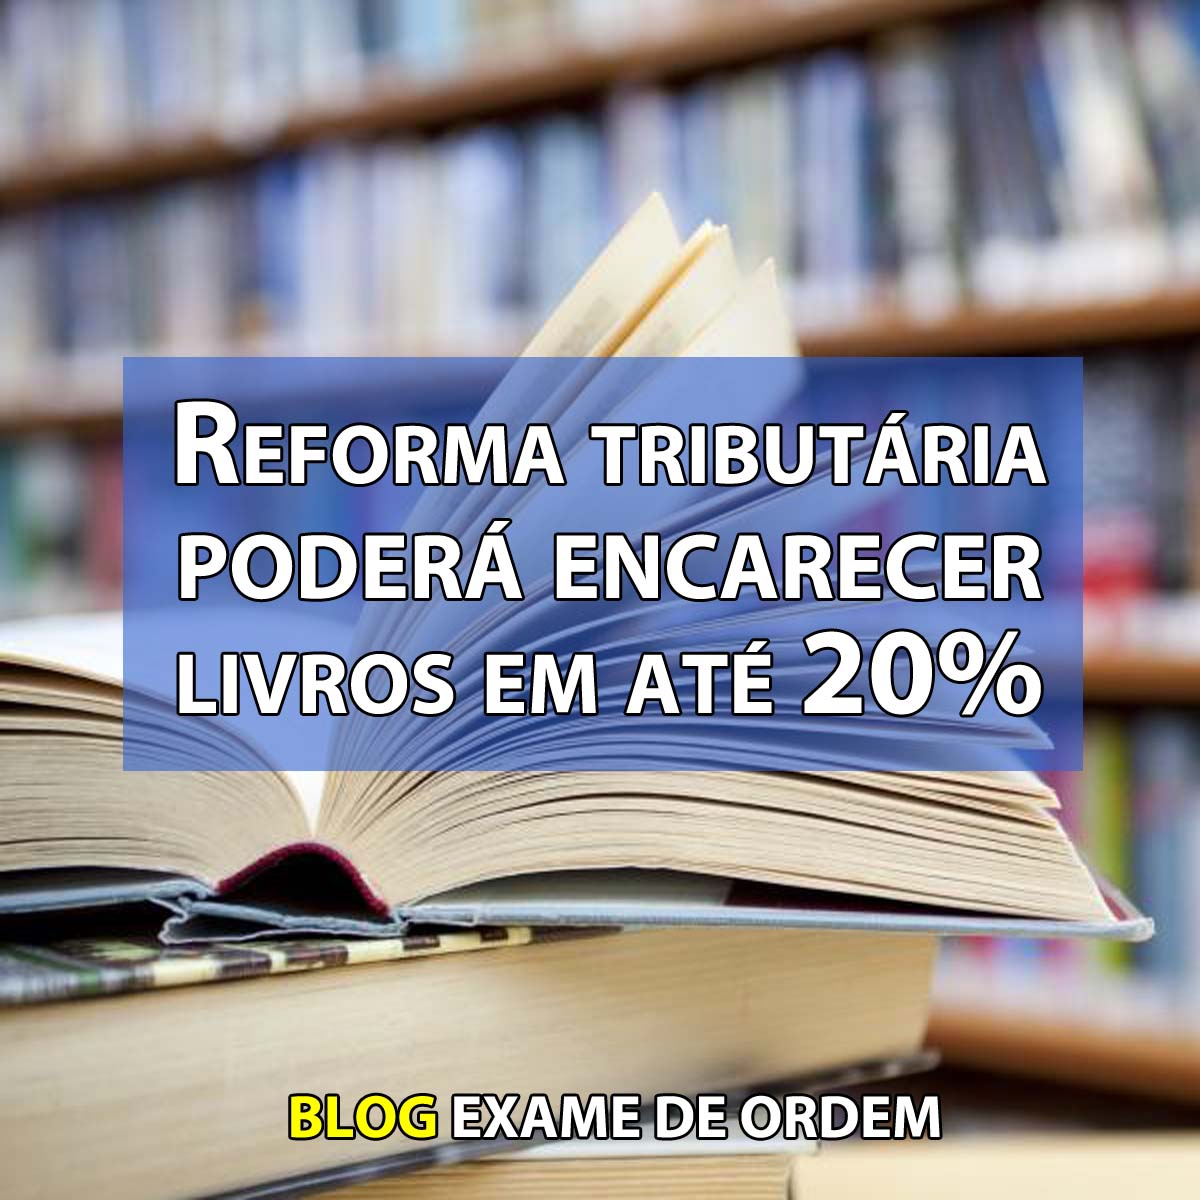 Reforma tributária poderá encarecer livros em até 20%